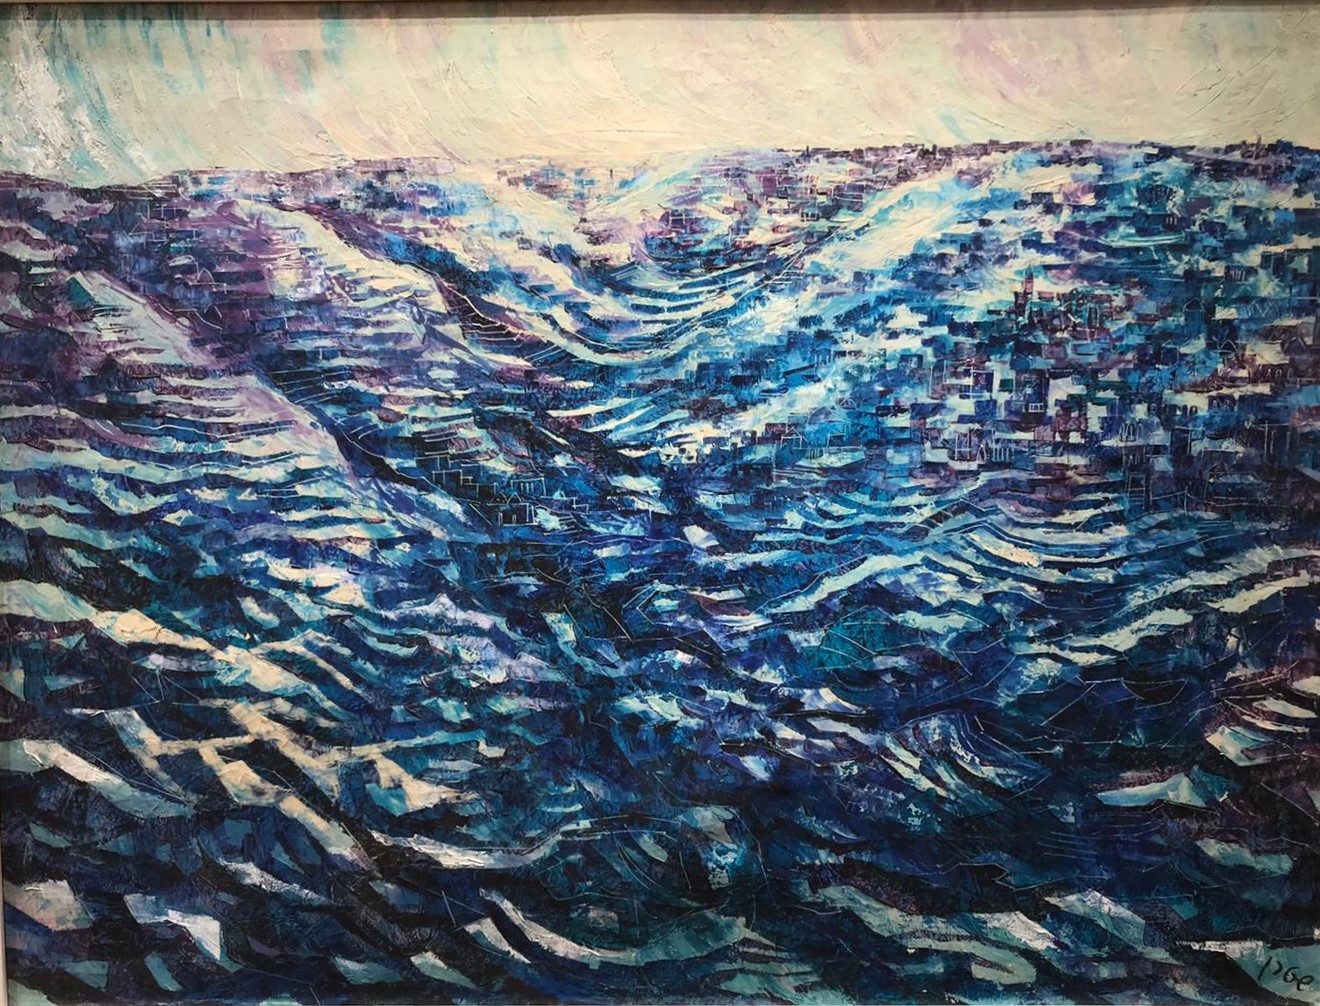 Jossi Stern - Judean hills - Oil on canvas - 60x80 cm